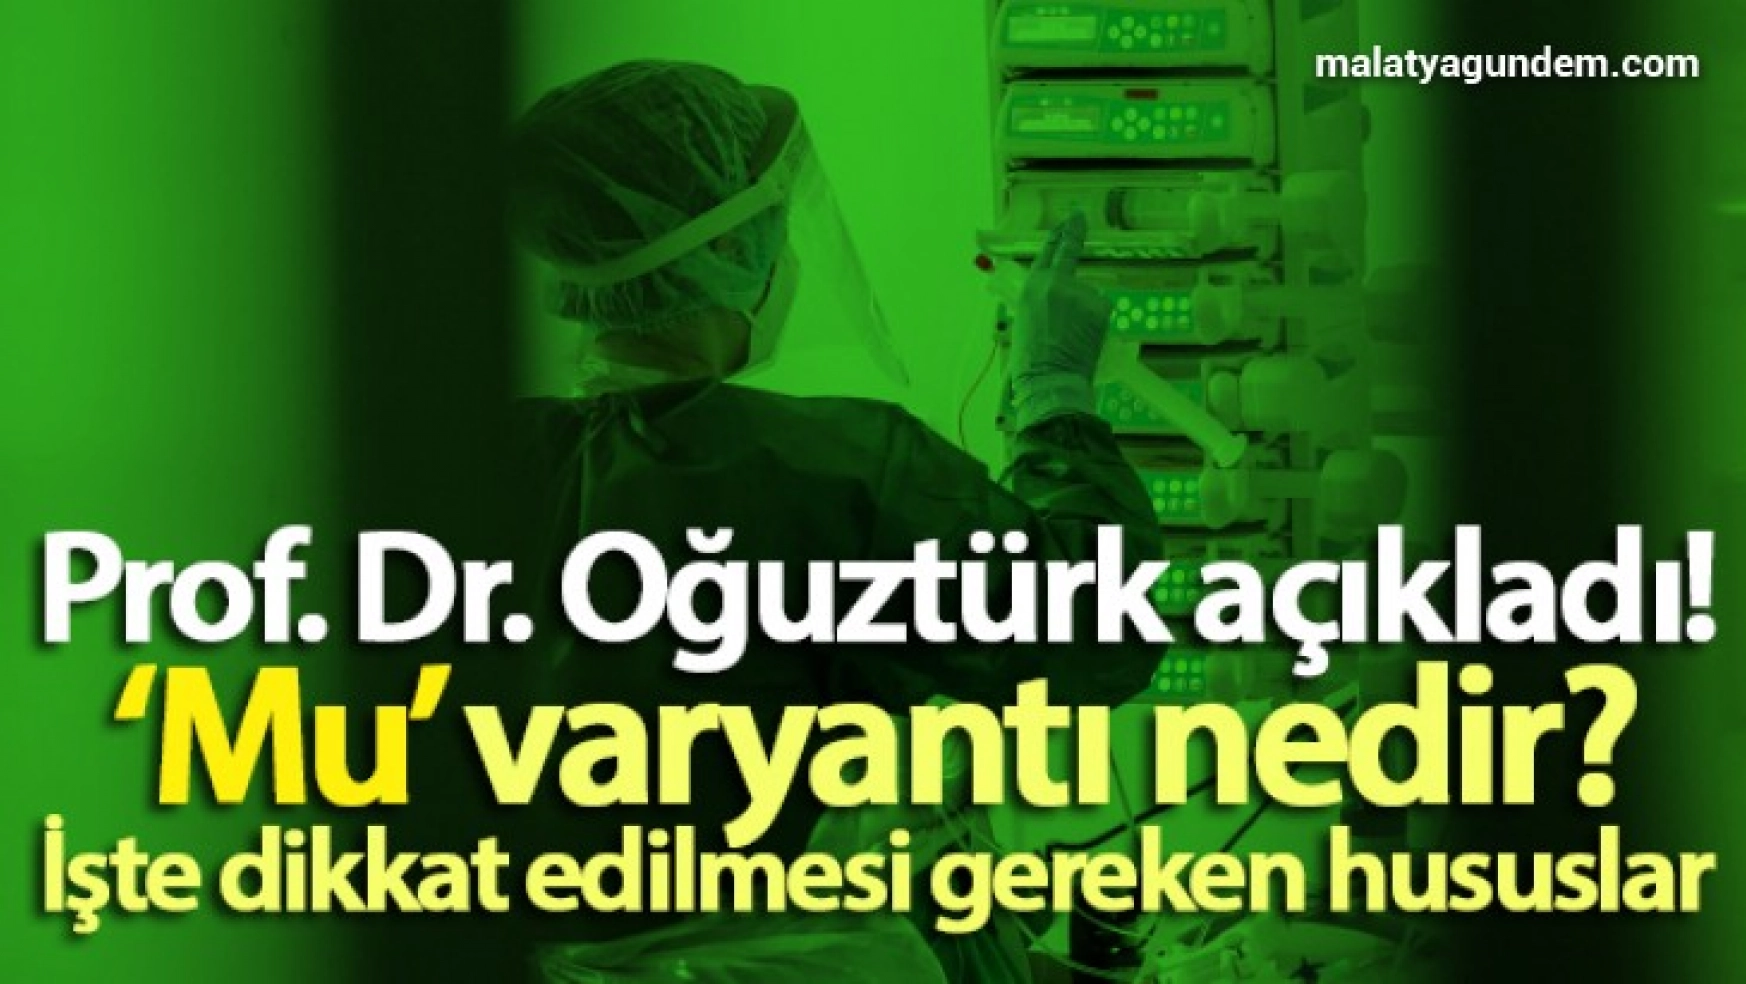 Prof. Dr. Oğuztürk'ten, 'Mu' varyantı açıklaması!